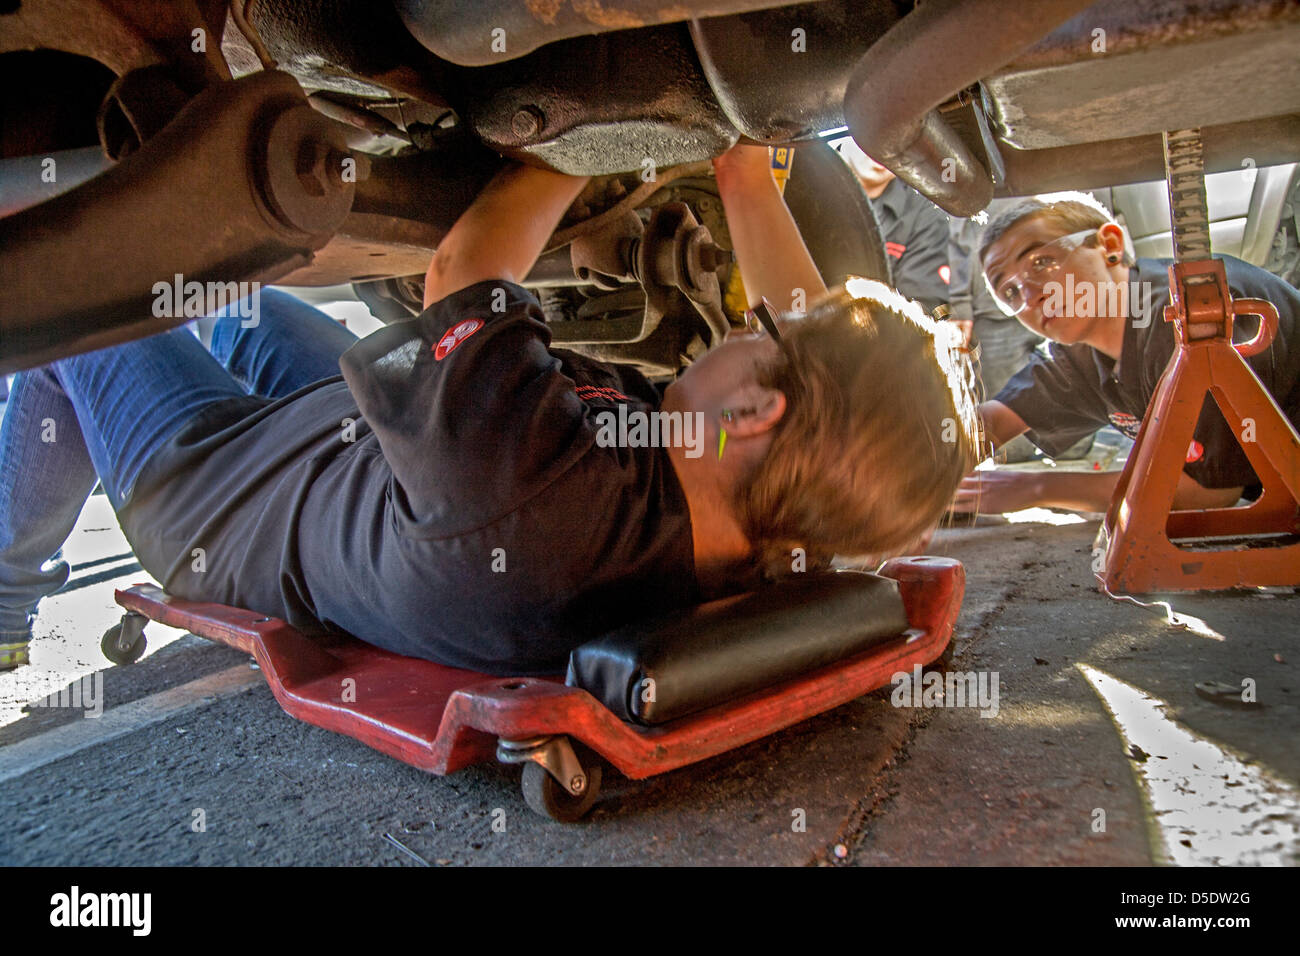 Le port de lunettes de sécurité un Caucasian teenage girl and boy travailler sous un moteur de voiture en auto shop class à San Clemente, CA. Banque D'Images